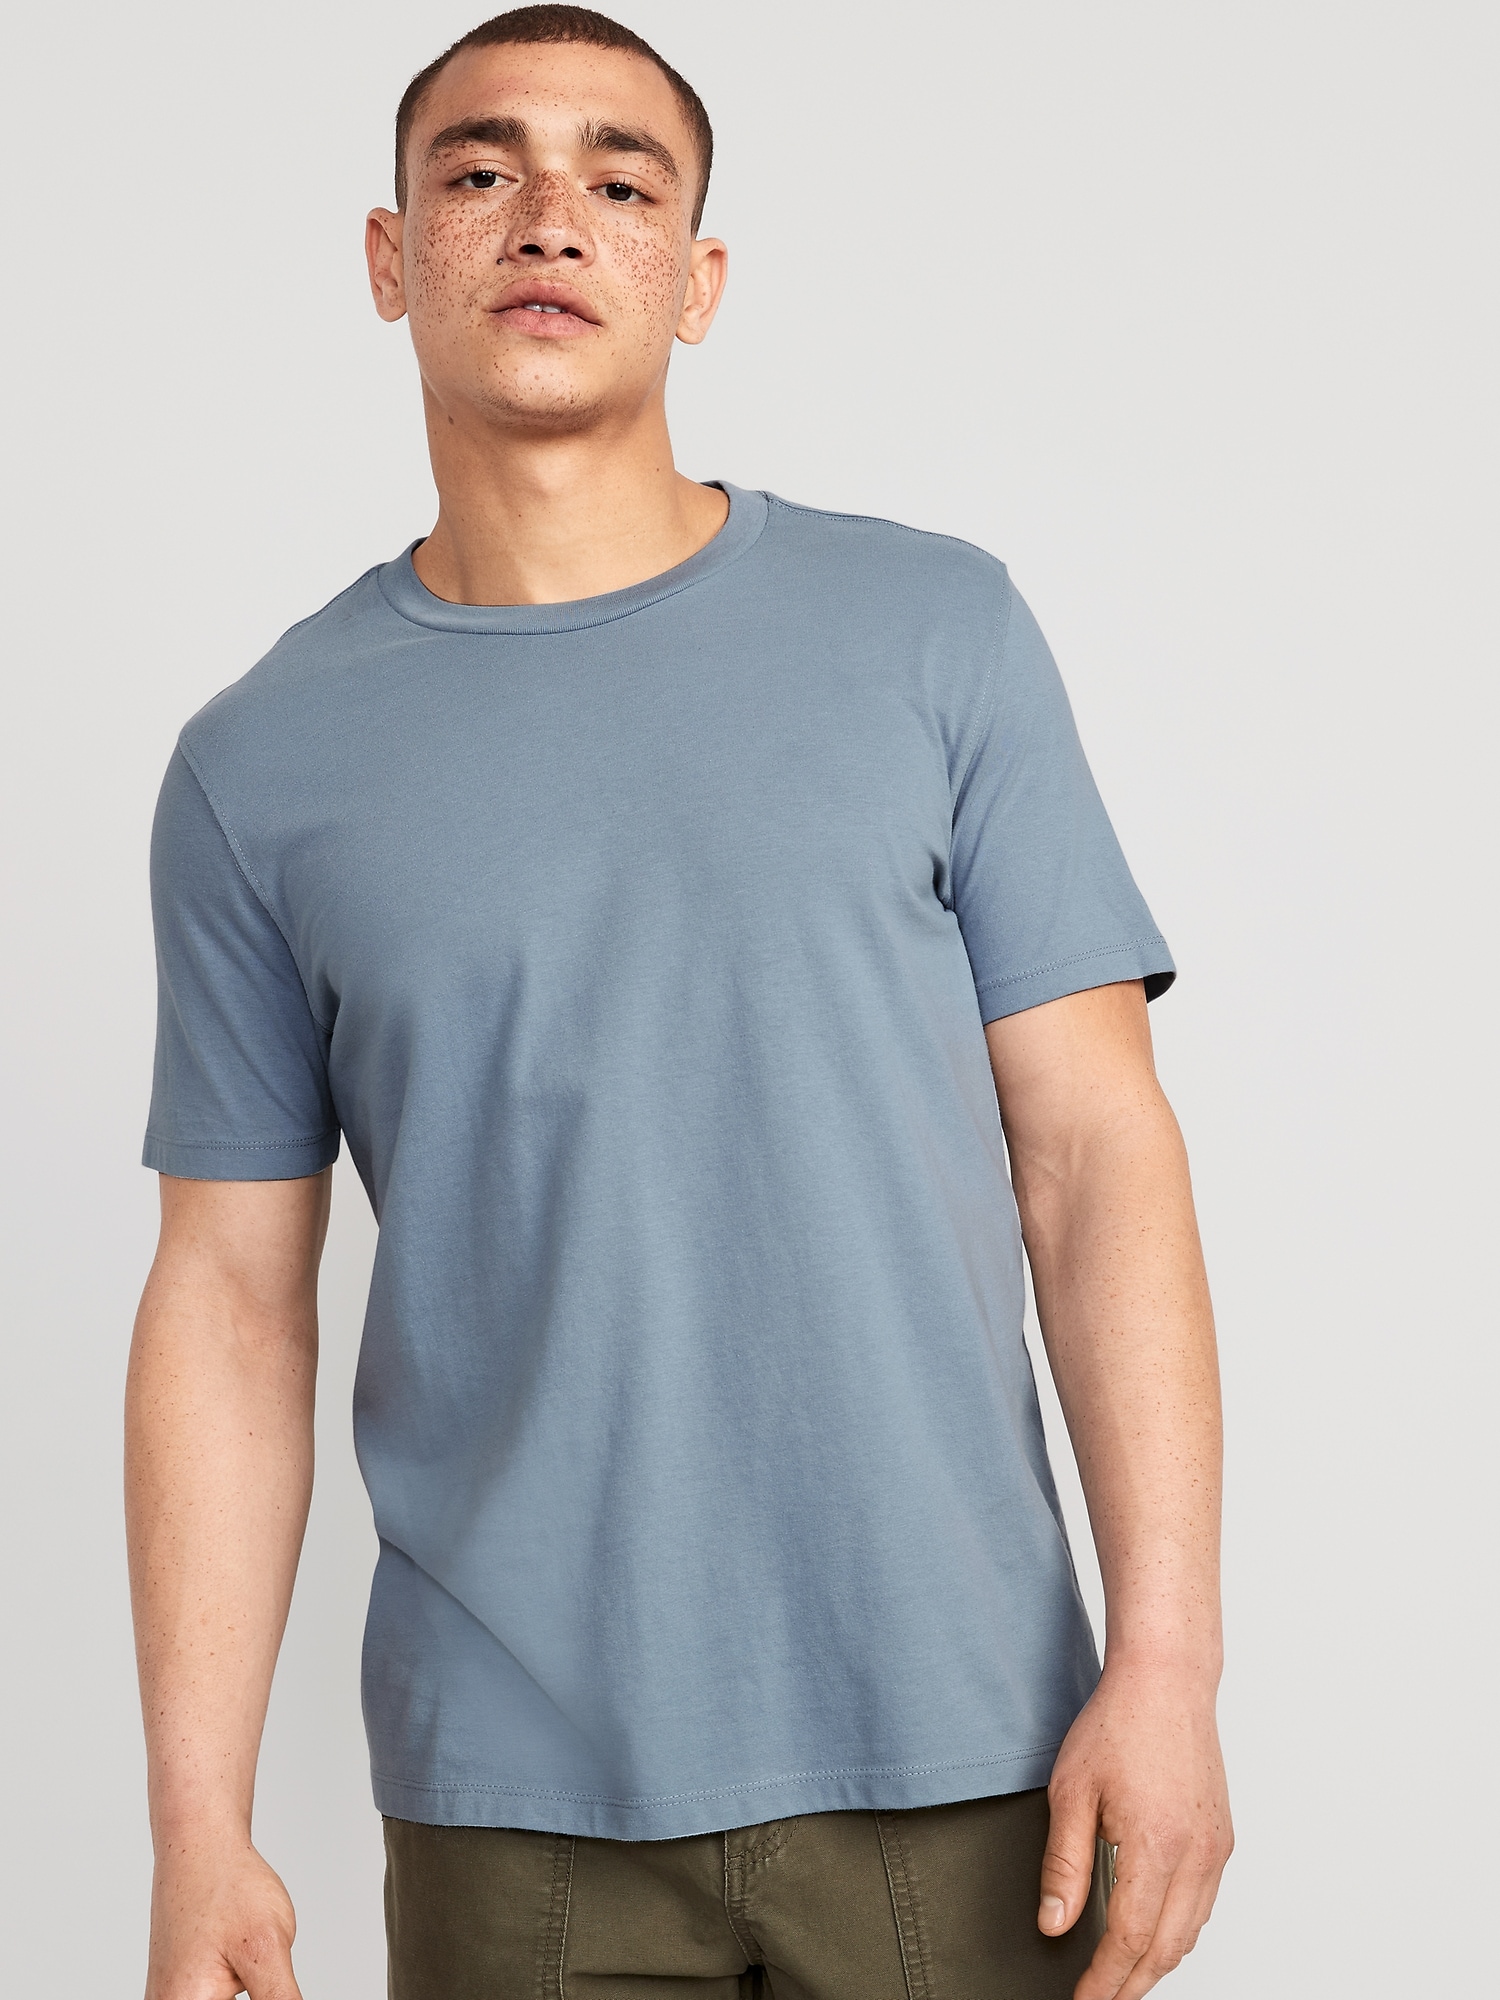 Old Navy Men's Soft-Washed V-Neck T-Shirt - - Size S